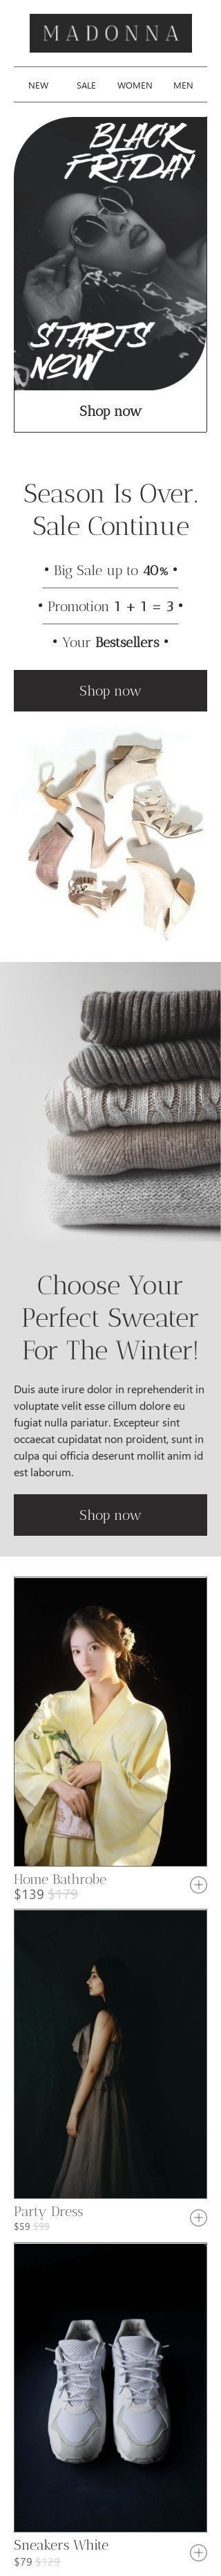 Шаблон письма к празднику Черная пятница «Выбери свой идеальный свитер» для индустрии «Мода» мобильный вид